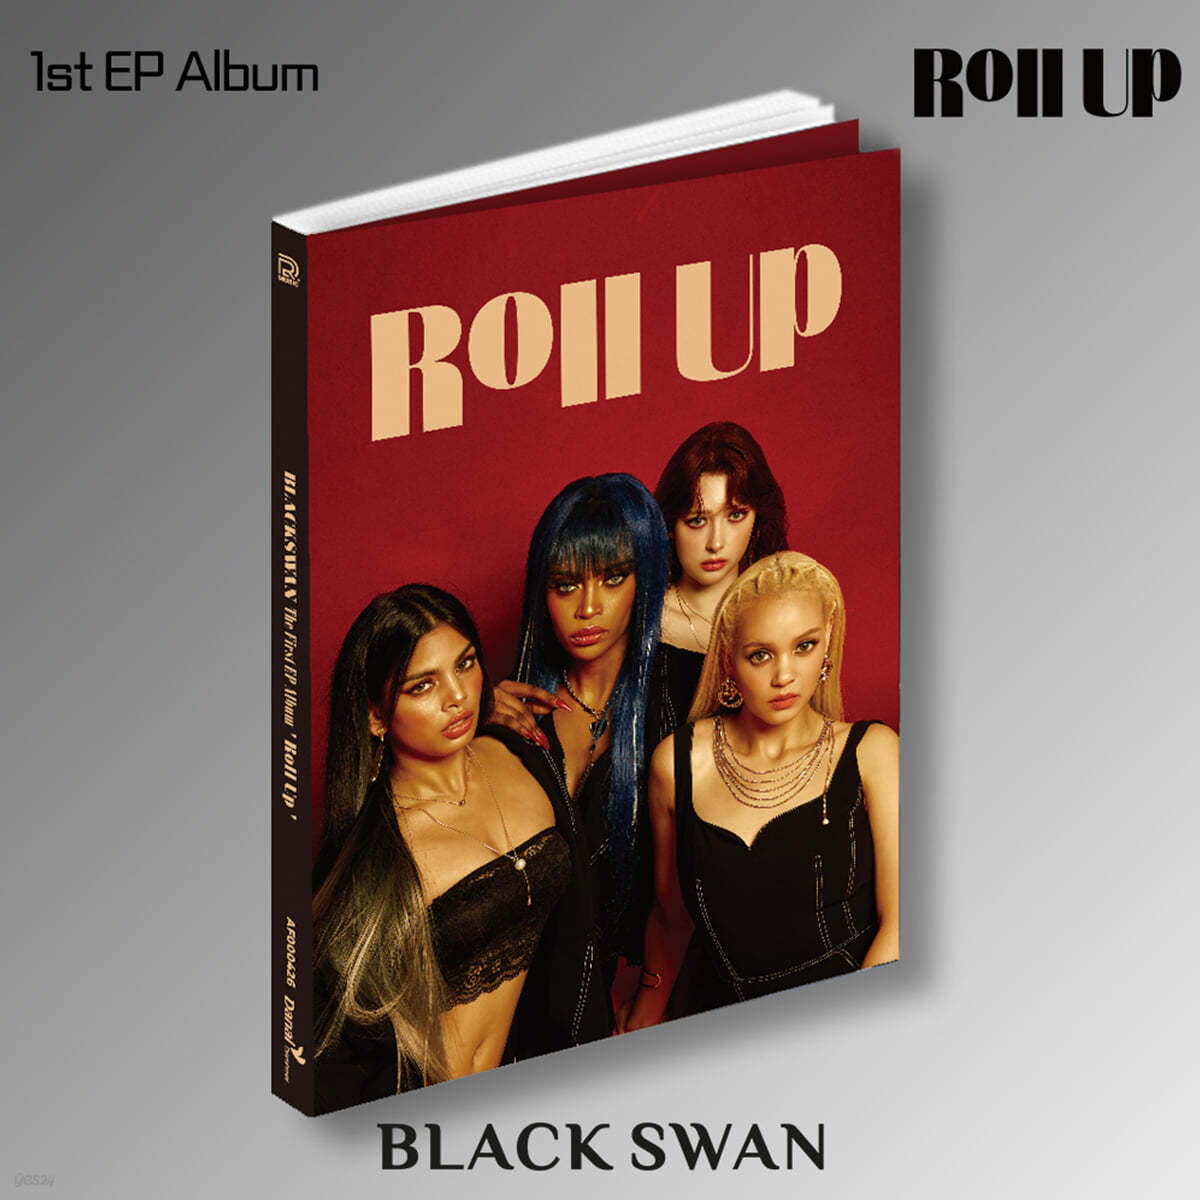 블랙스완 (BLACKSWAN) - The First EP Album : Roll Up